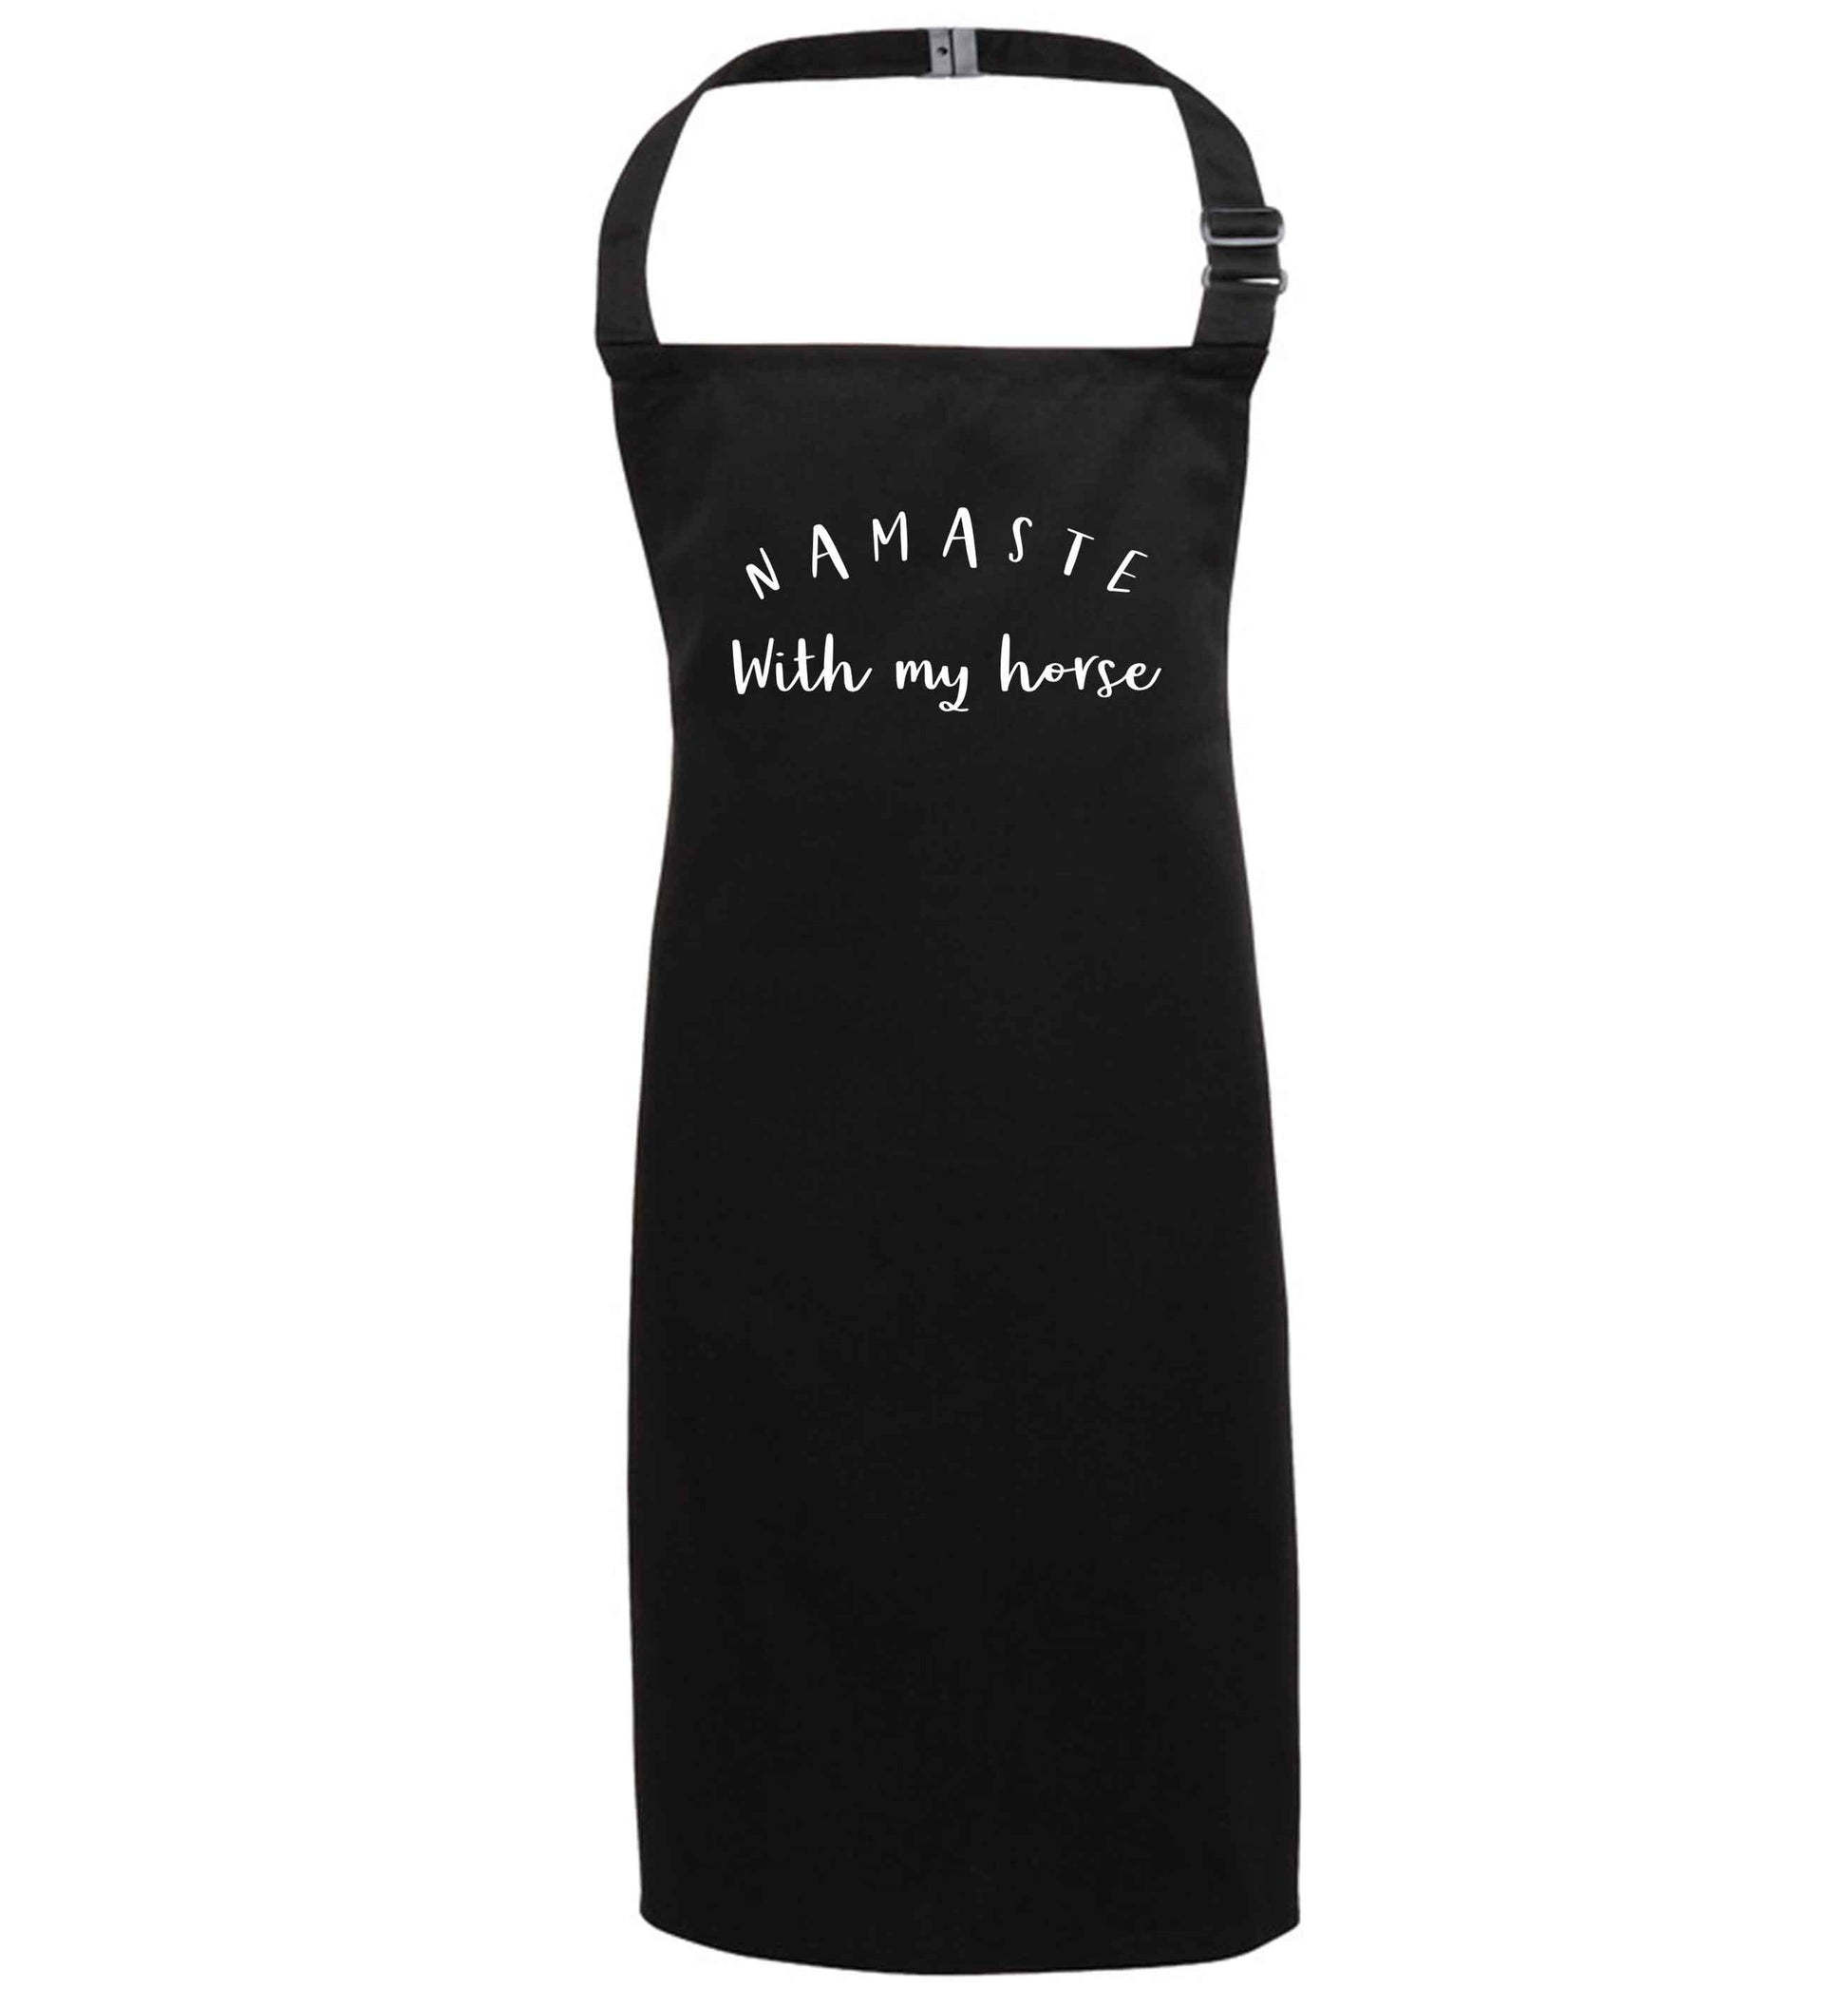 Namaste with my horse black apron 7-10 years